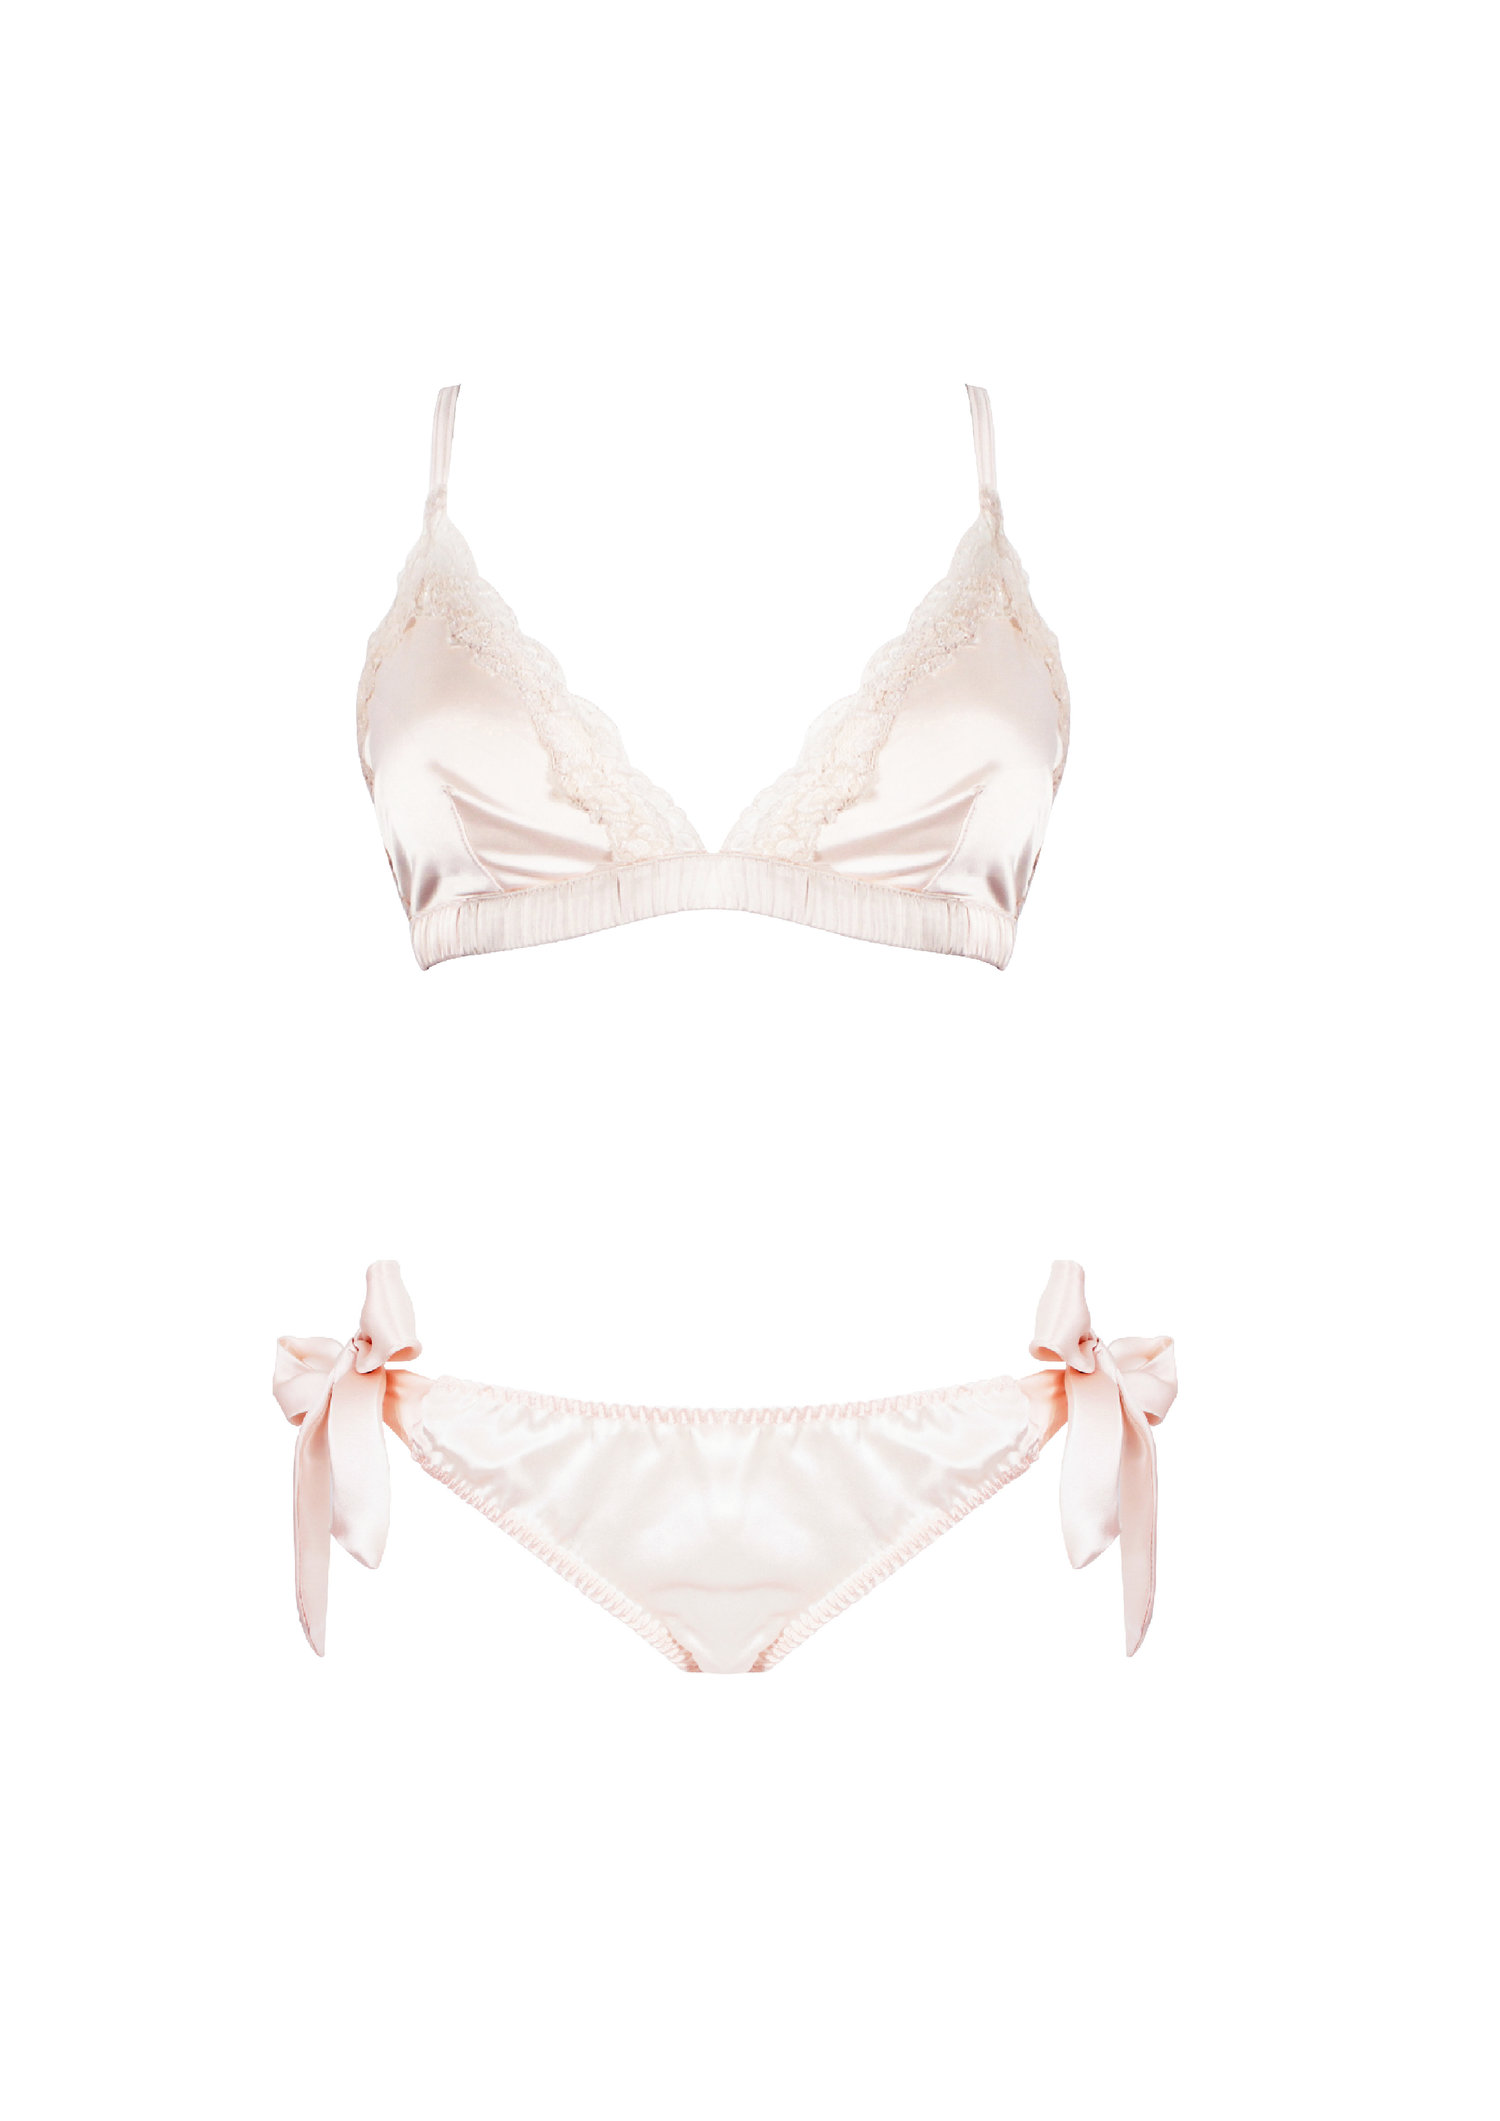 blush+lingerie+sets-03.jpg